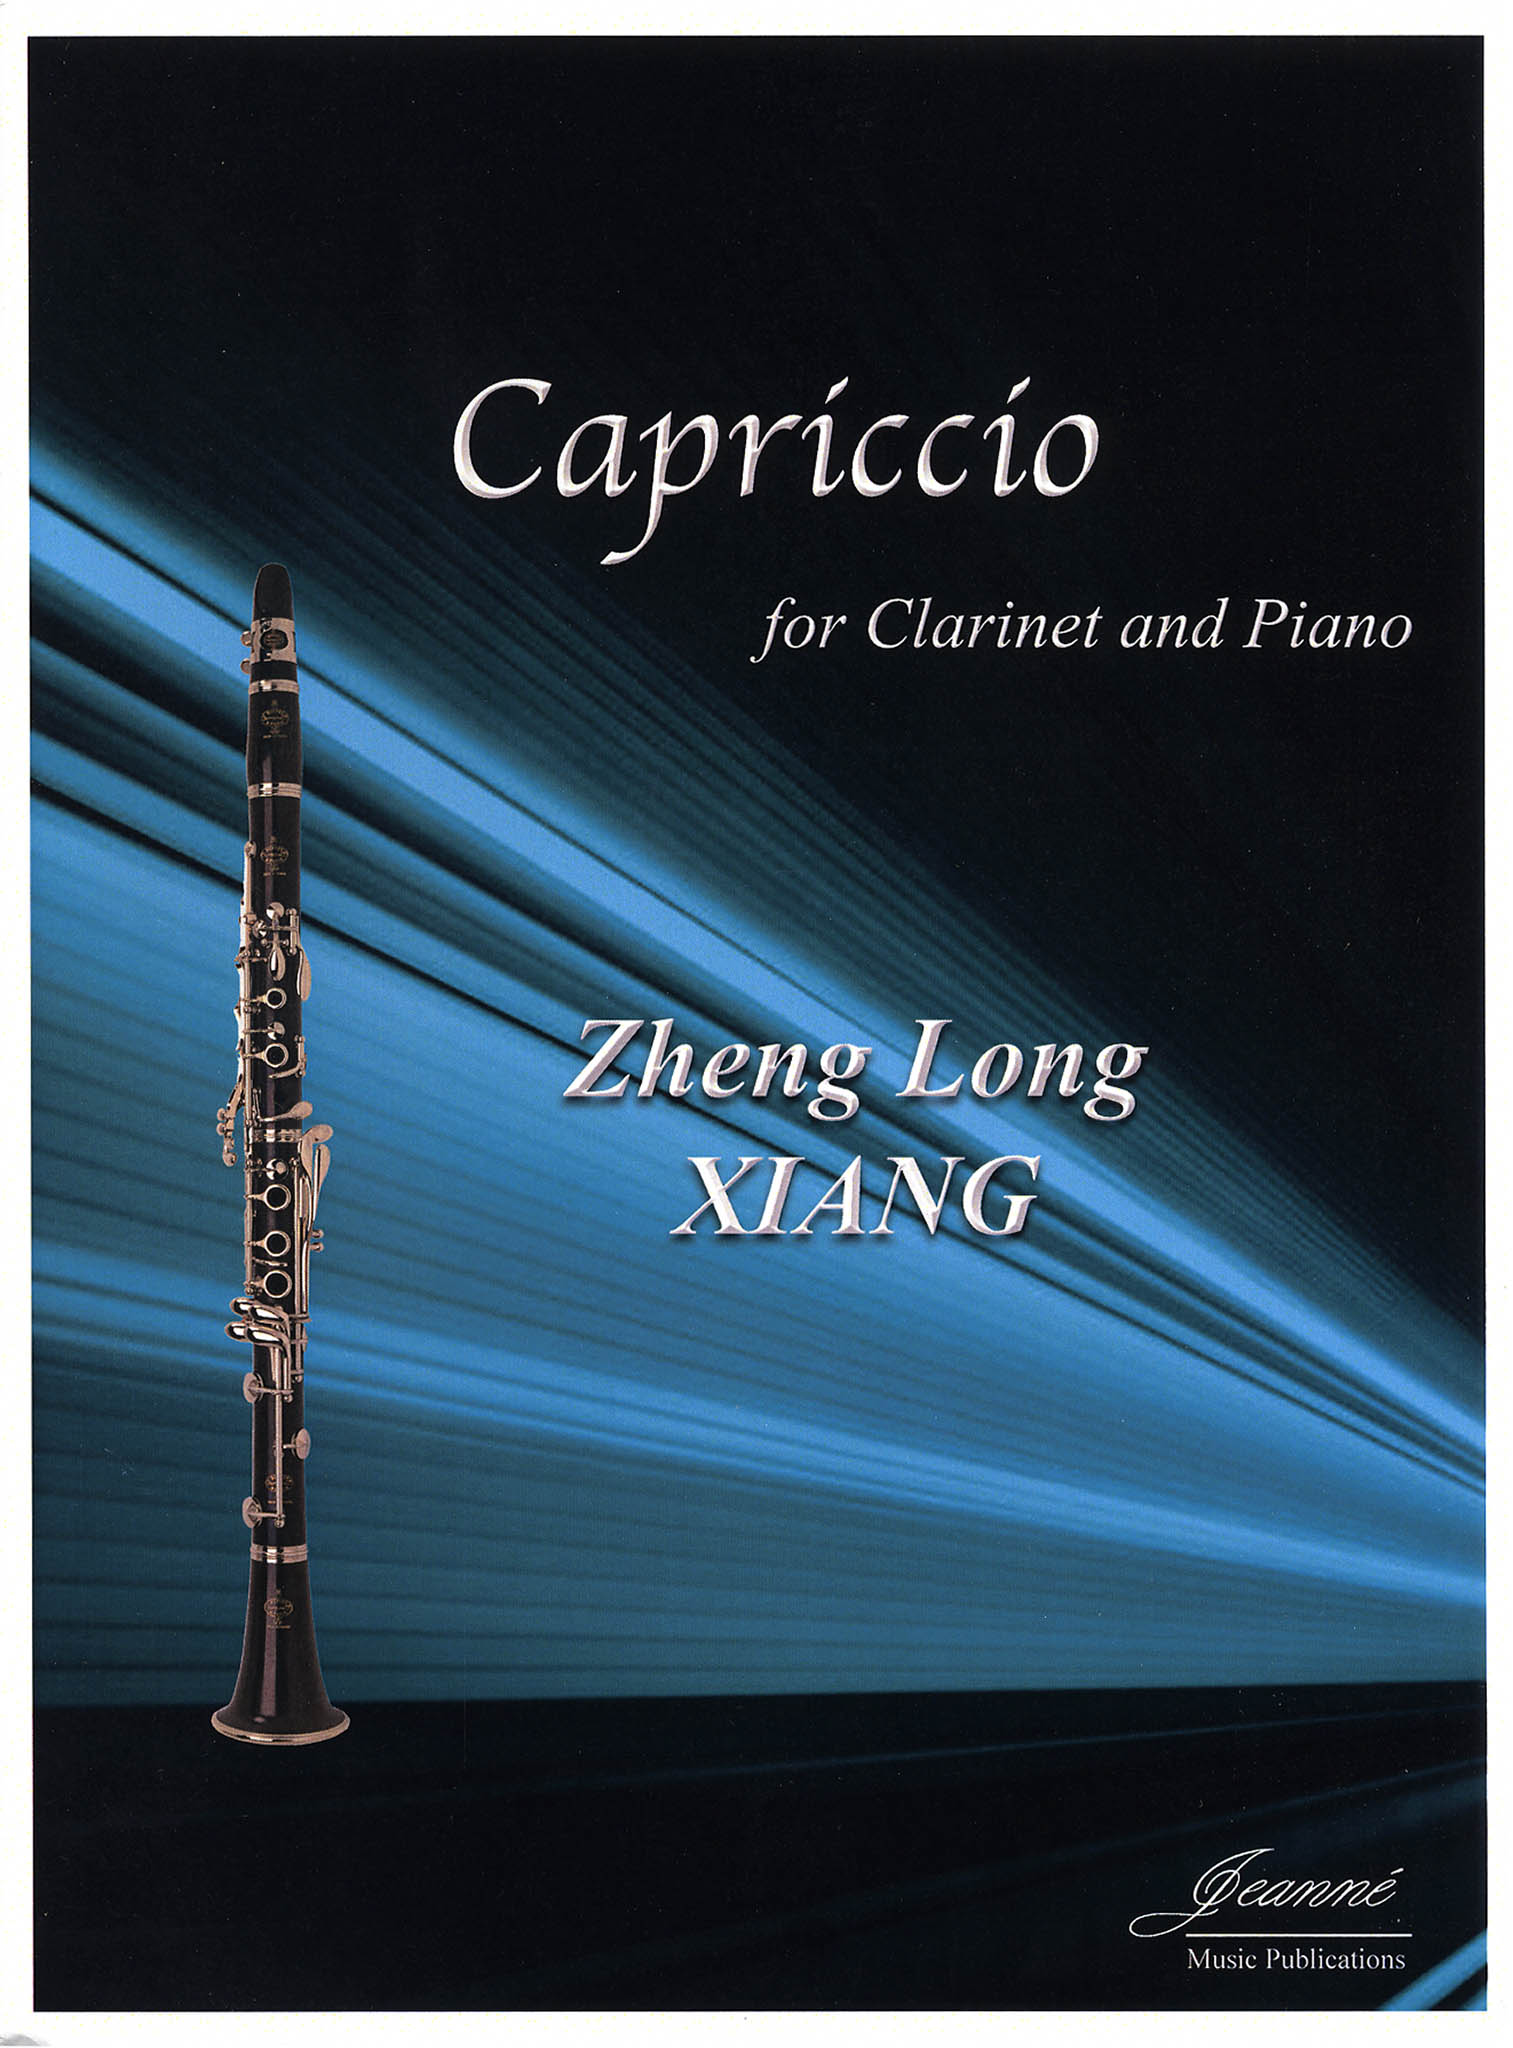 Xiang, Zheng Long: Capriccio, for clarinet & piano cover